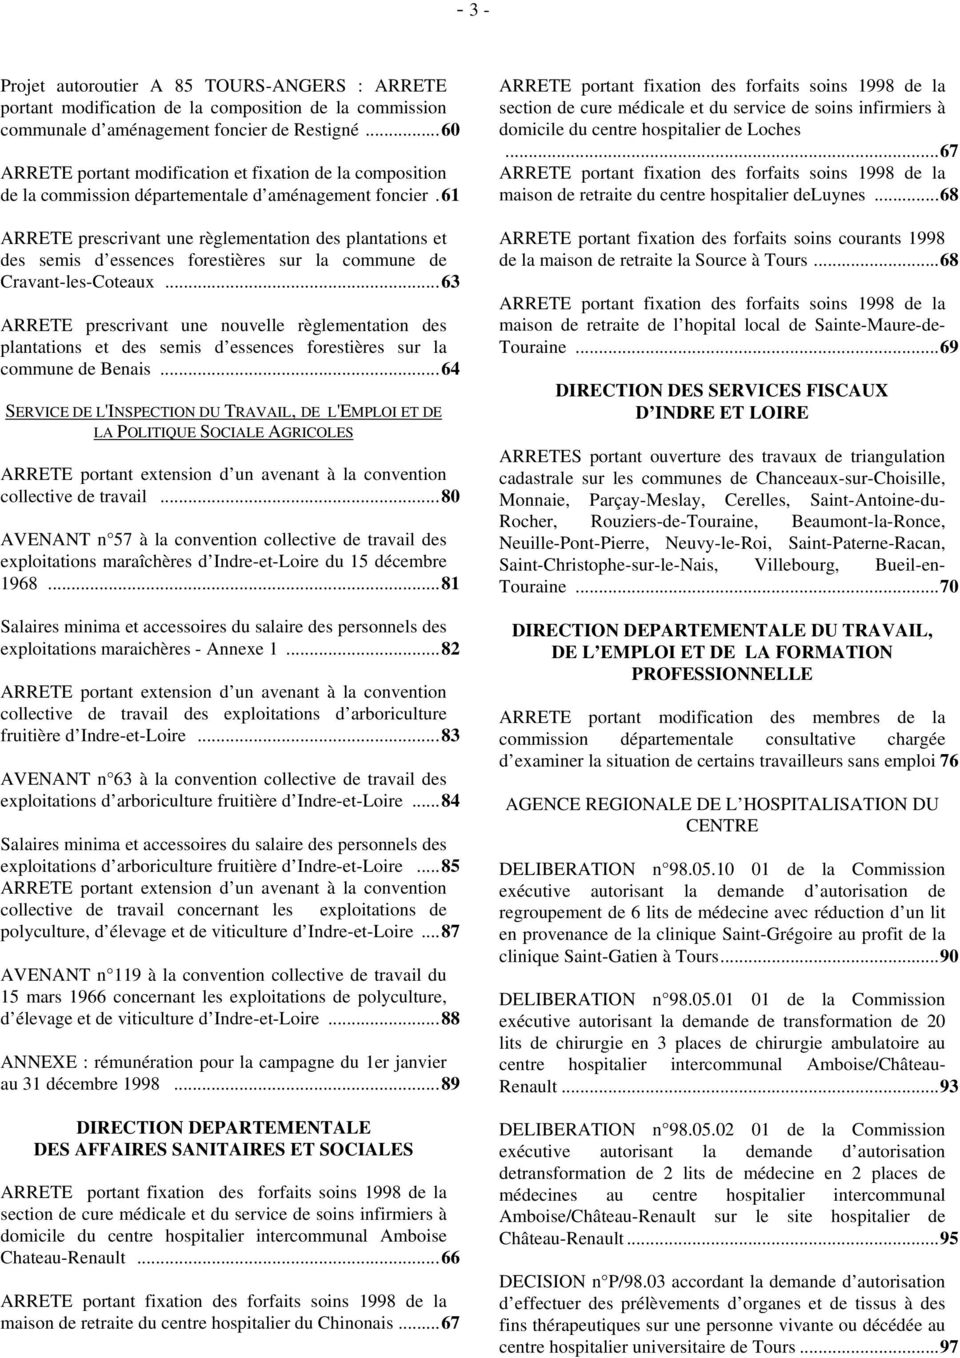 61 prescrivant une règlementation des plantations et des semis d essences forestières sur la commune de Cravant-les-Coteaux.